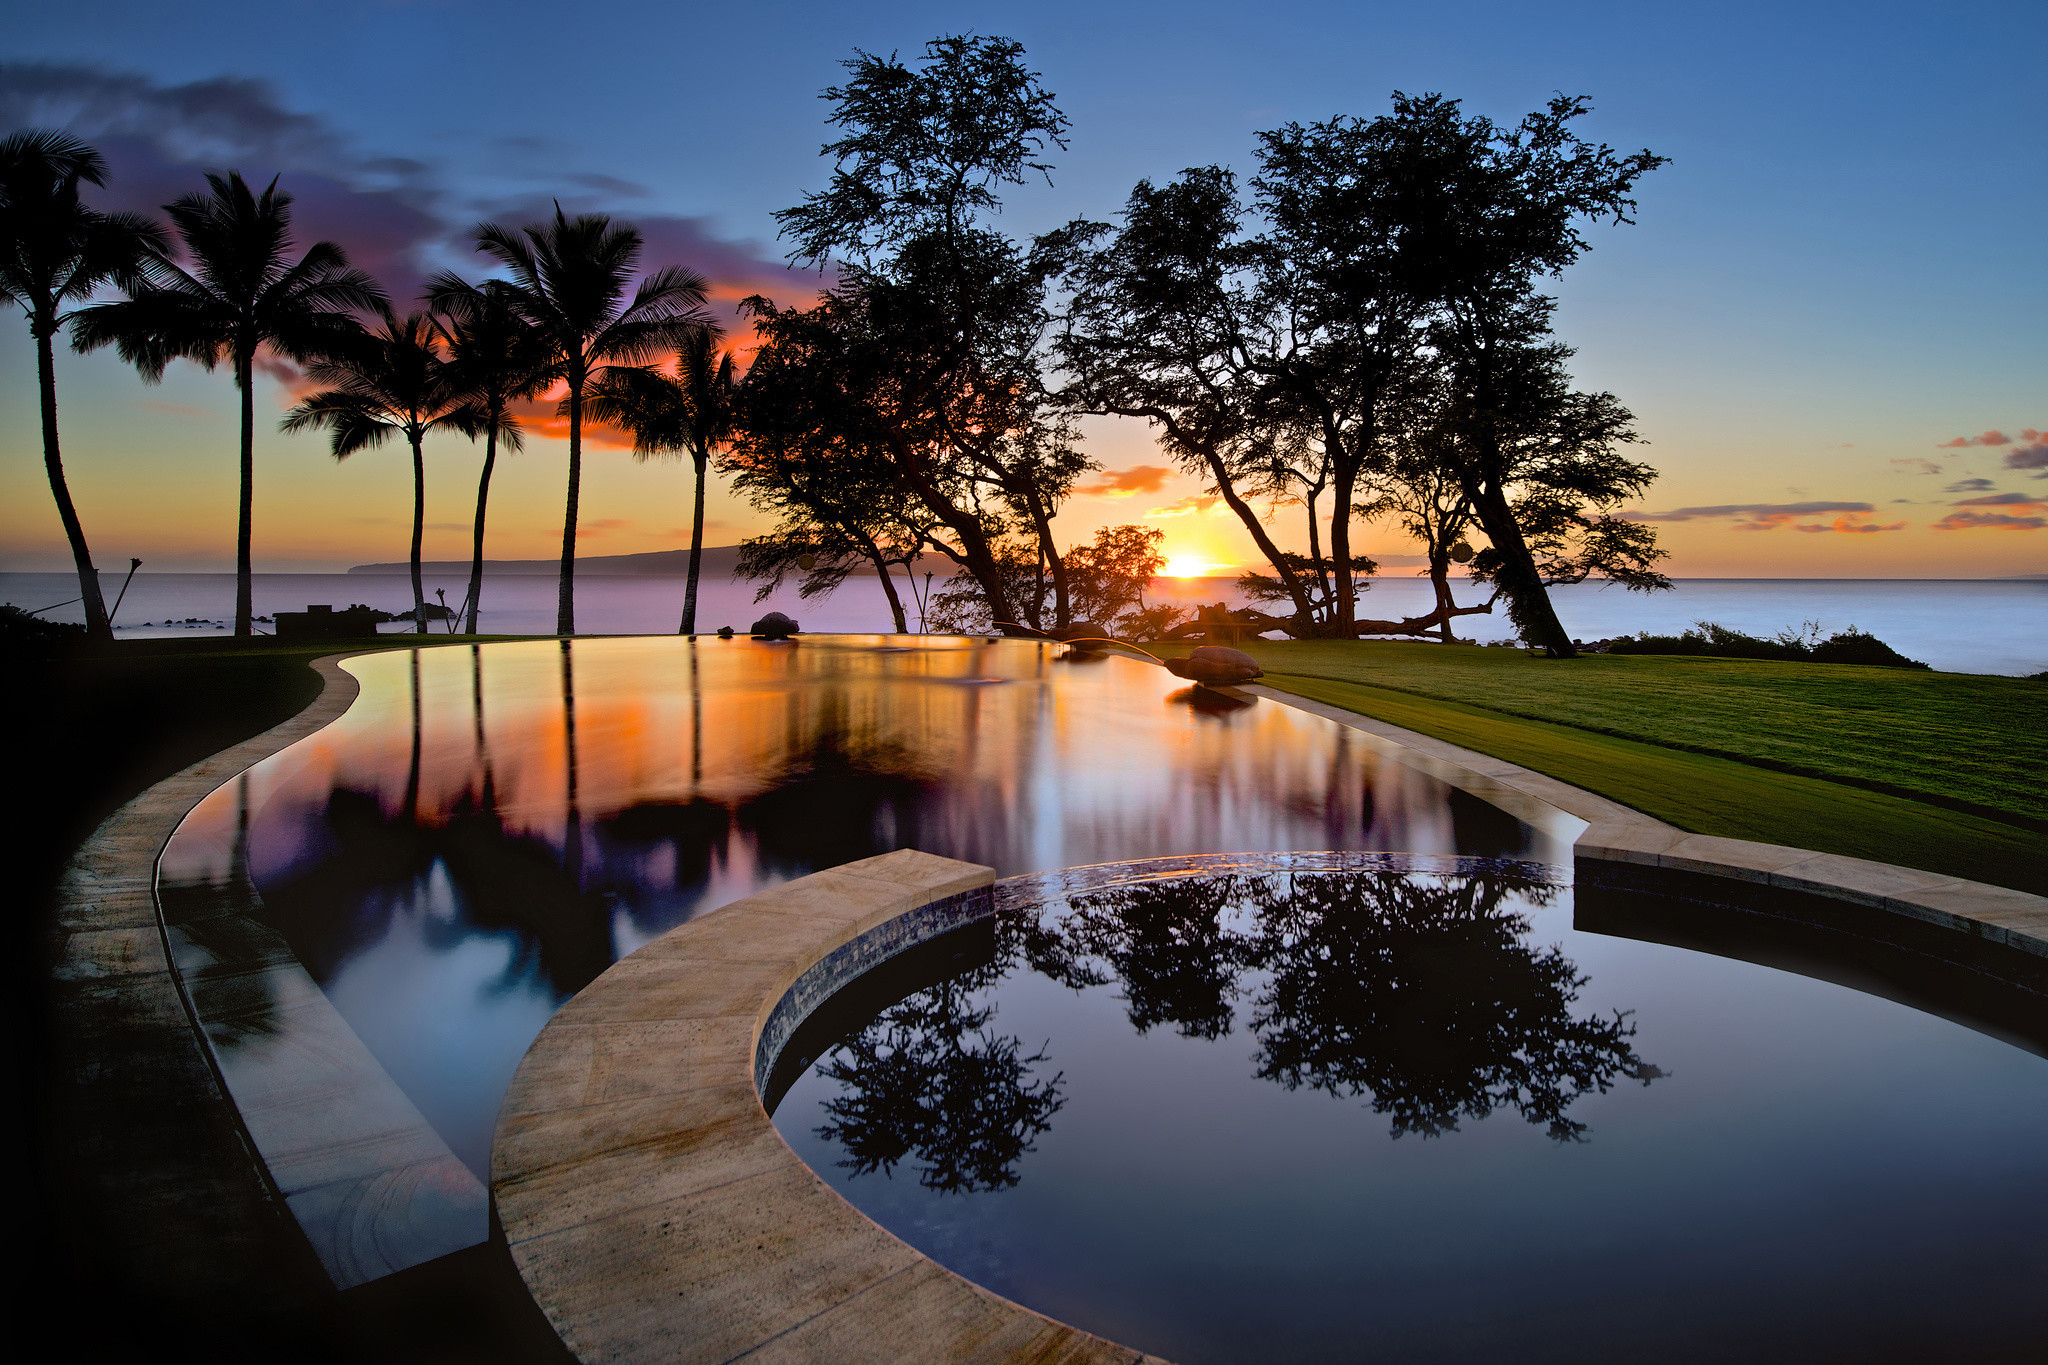 2048x1365 USA, Hawaii, island, Maui, Wailea, sunset, pool, reflection,